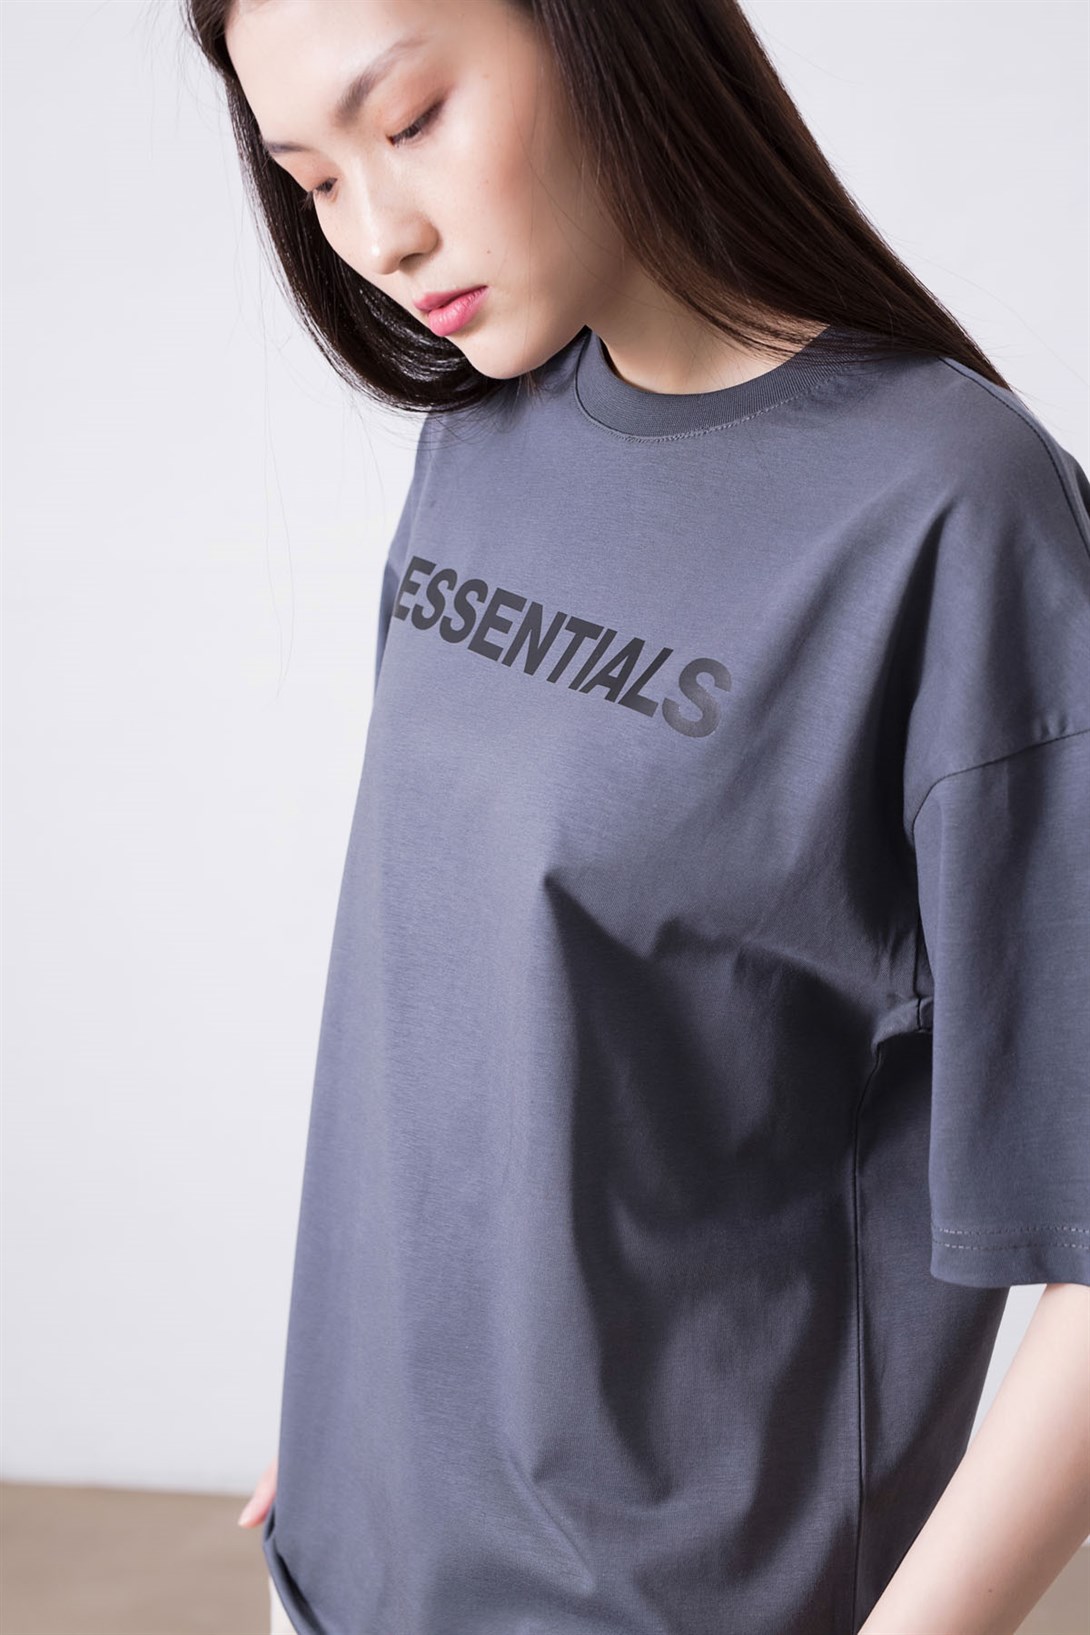 Trendiz Unisex Essentials Antrasit Tshirt